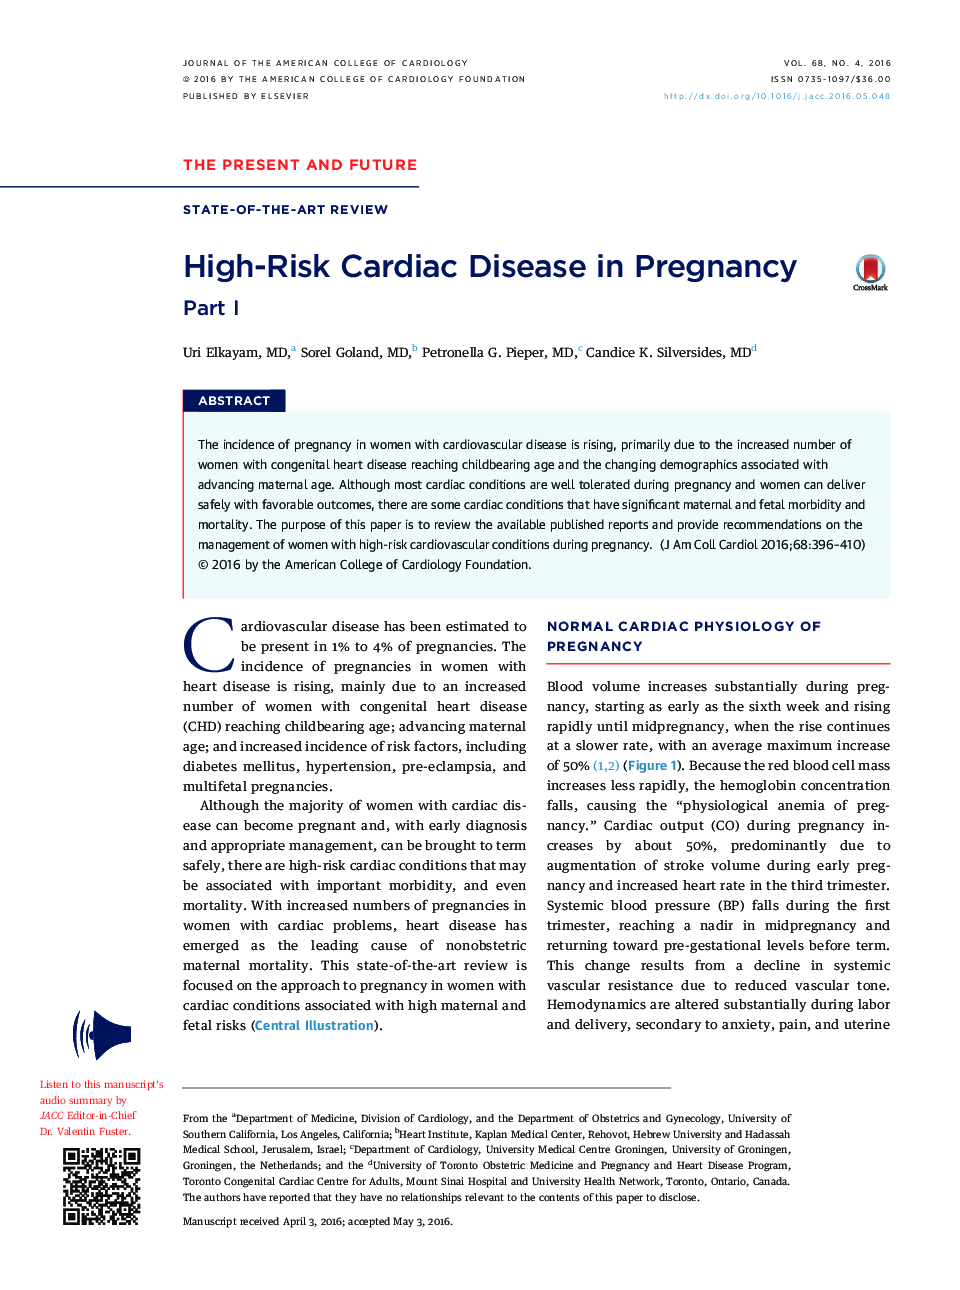 خطر ابتلا به بیماری قلبی در بارداری: قسمت اول 